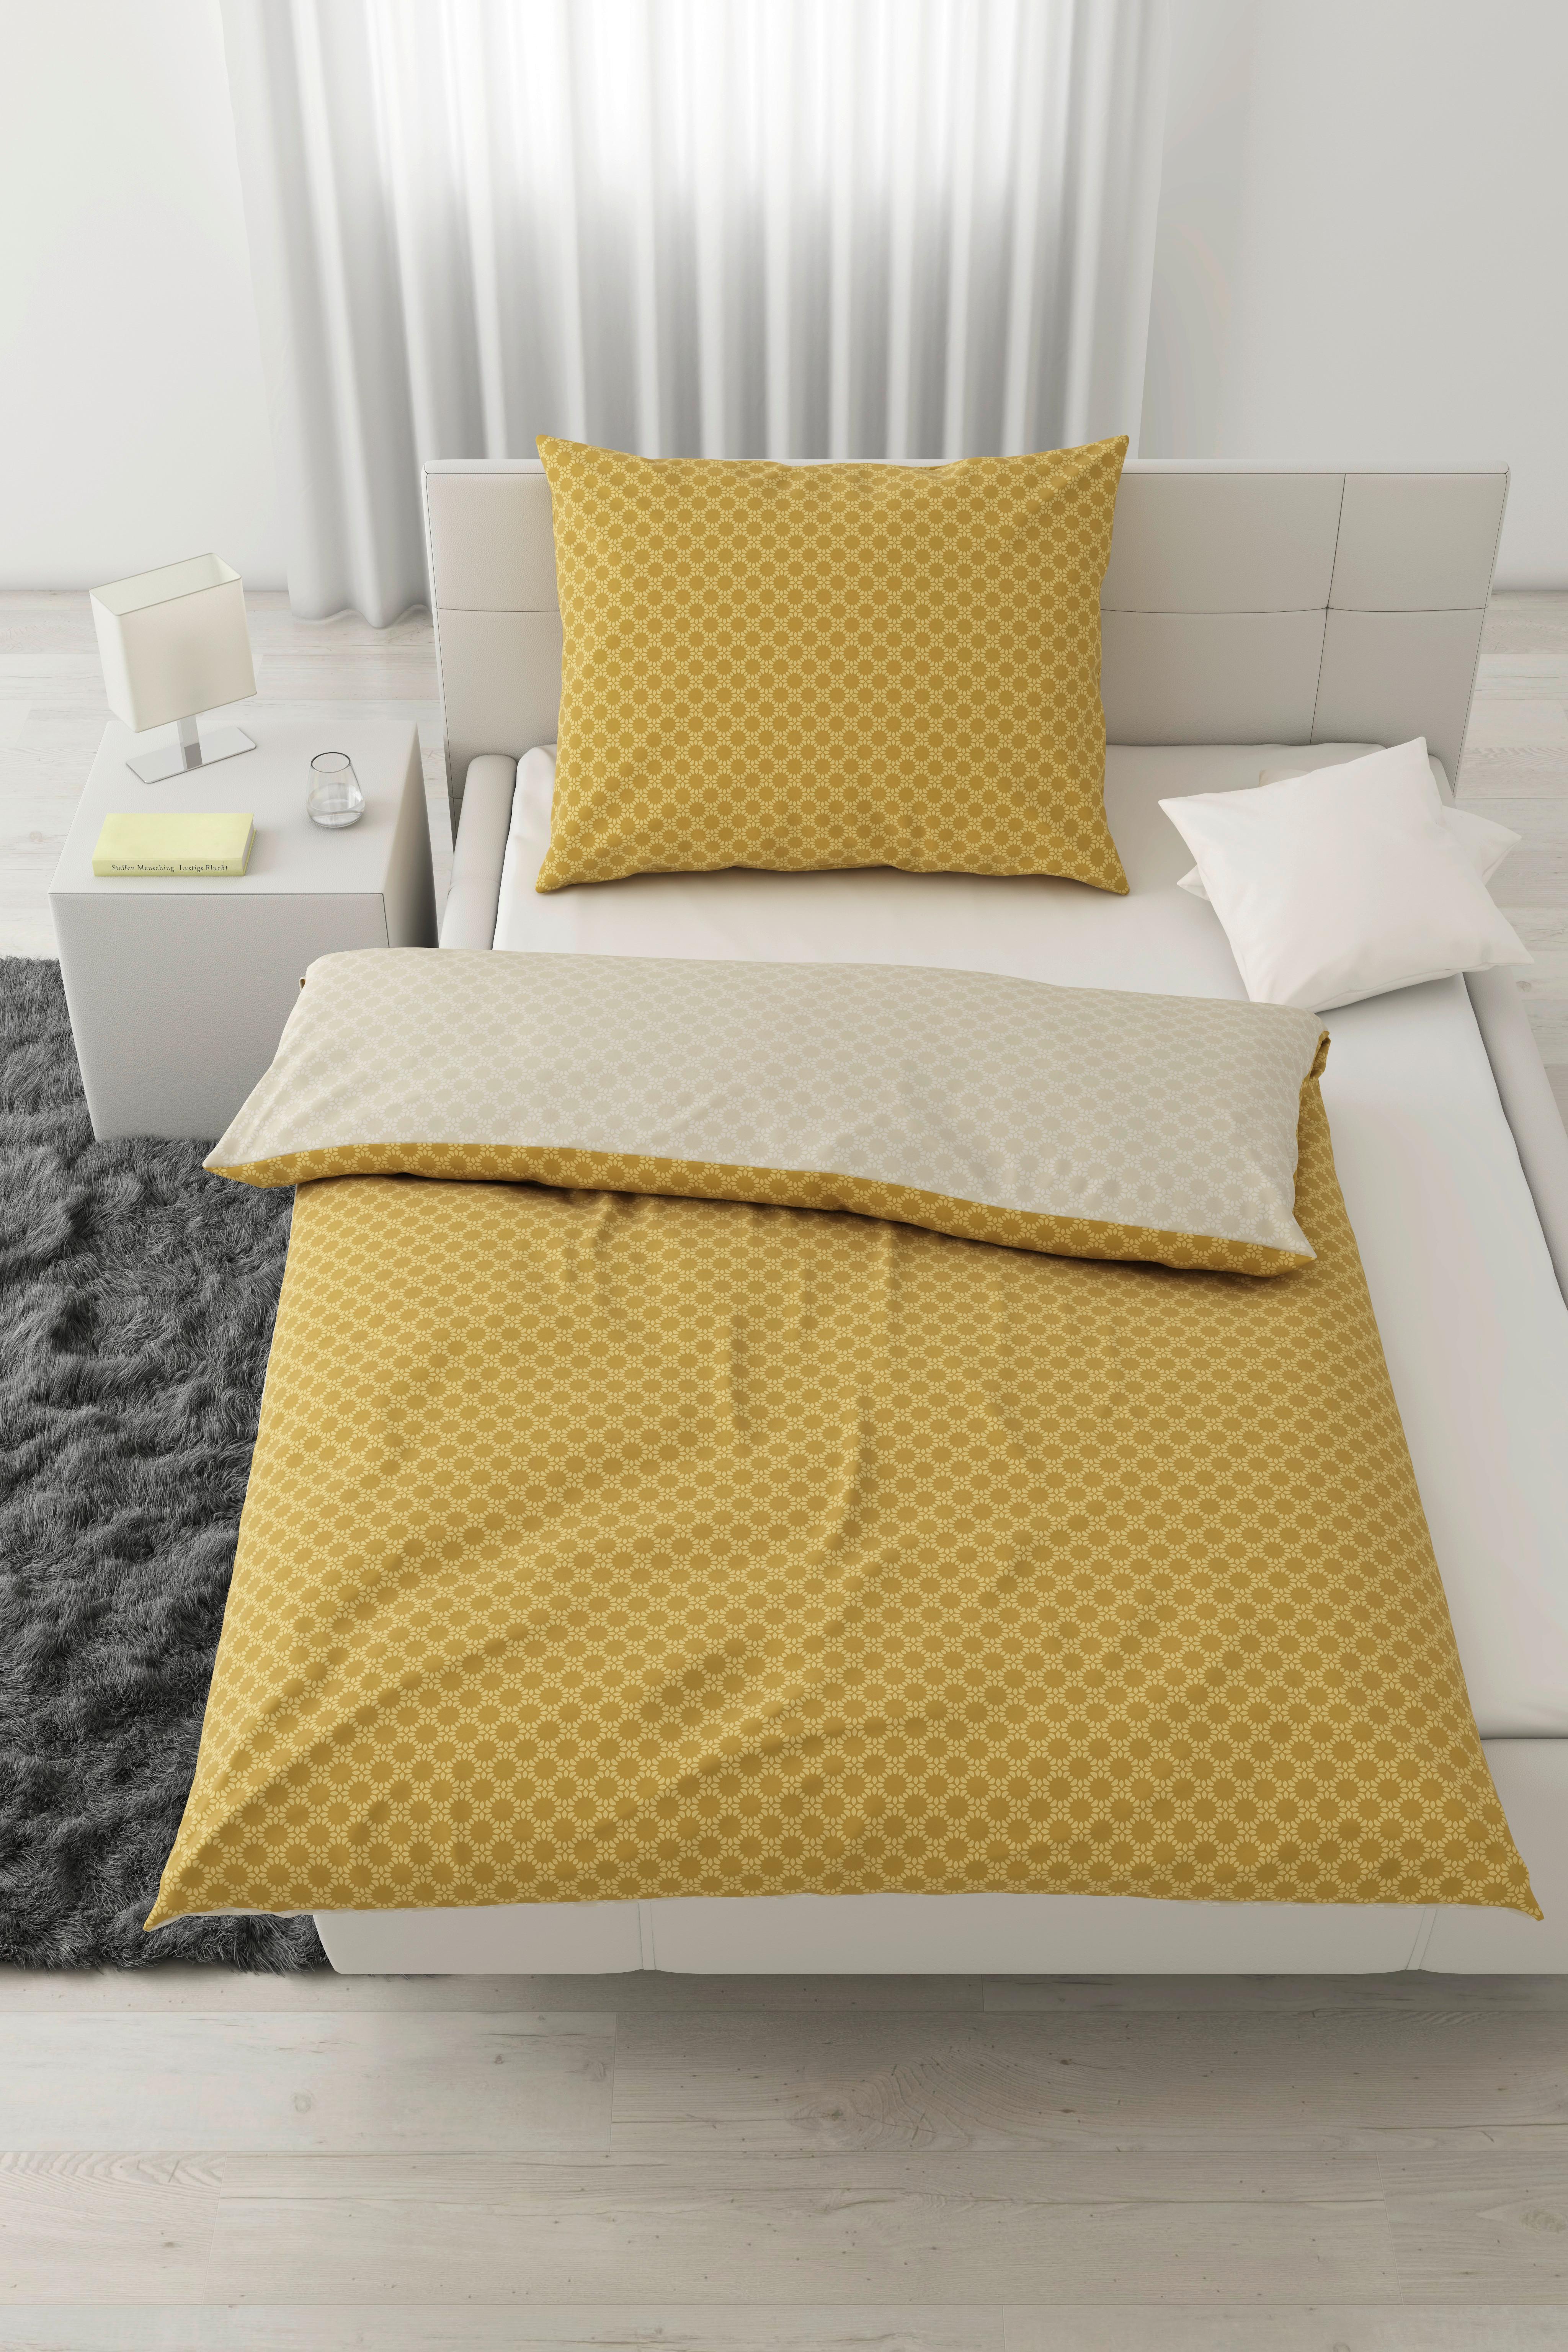 Povlečení Mici, 140/200cm - přírodní barvy/žlutá, Konvenční, textil (140/200cm) - Modern Living